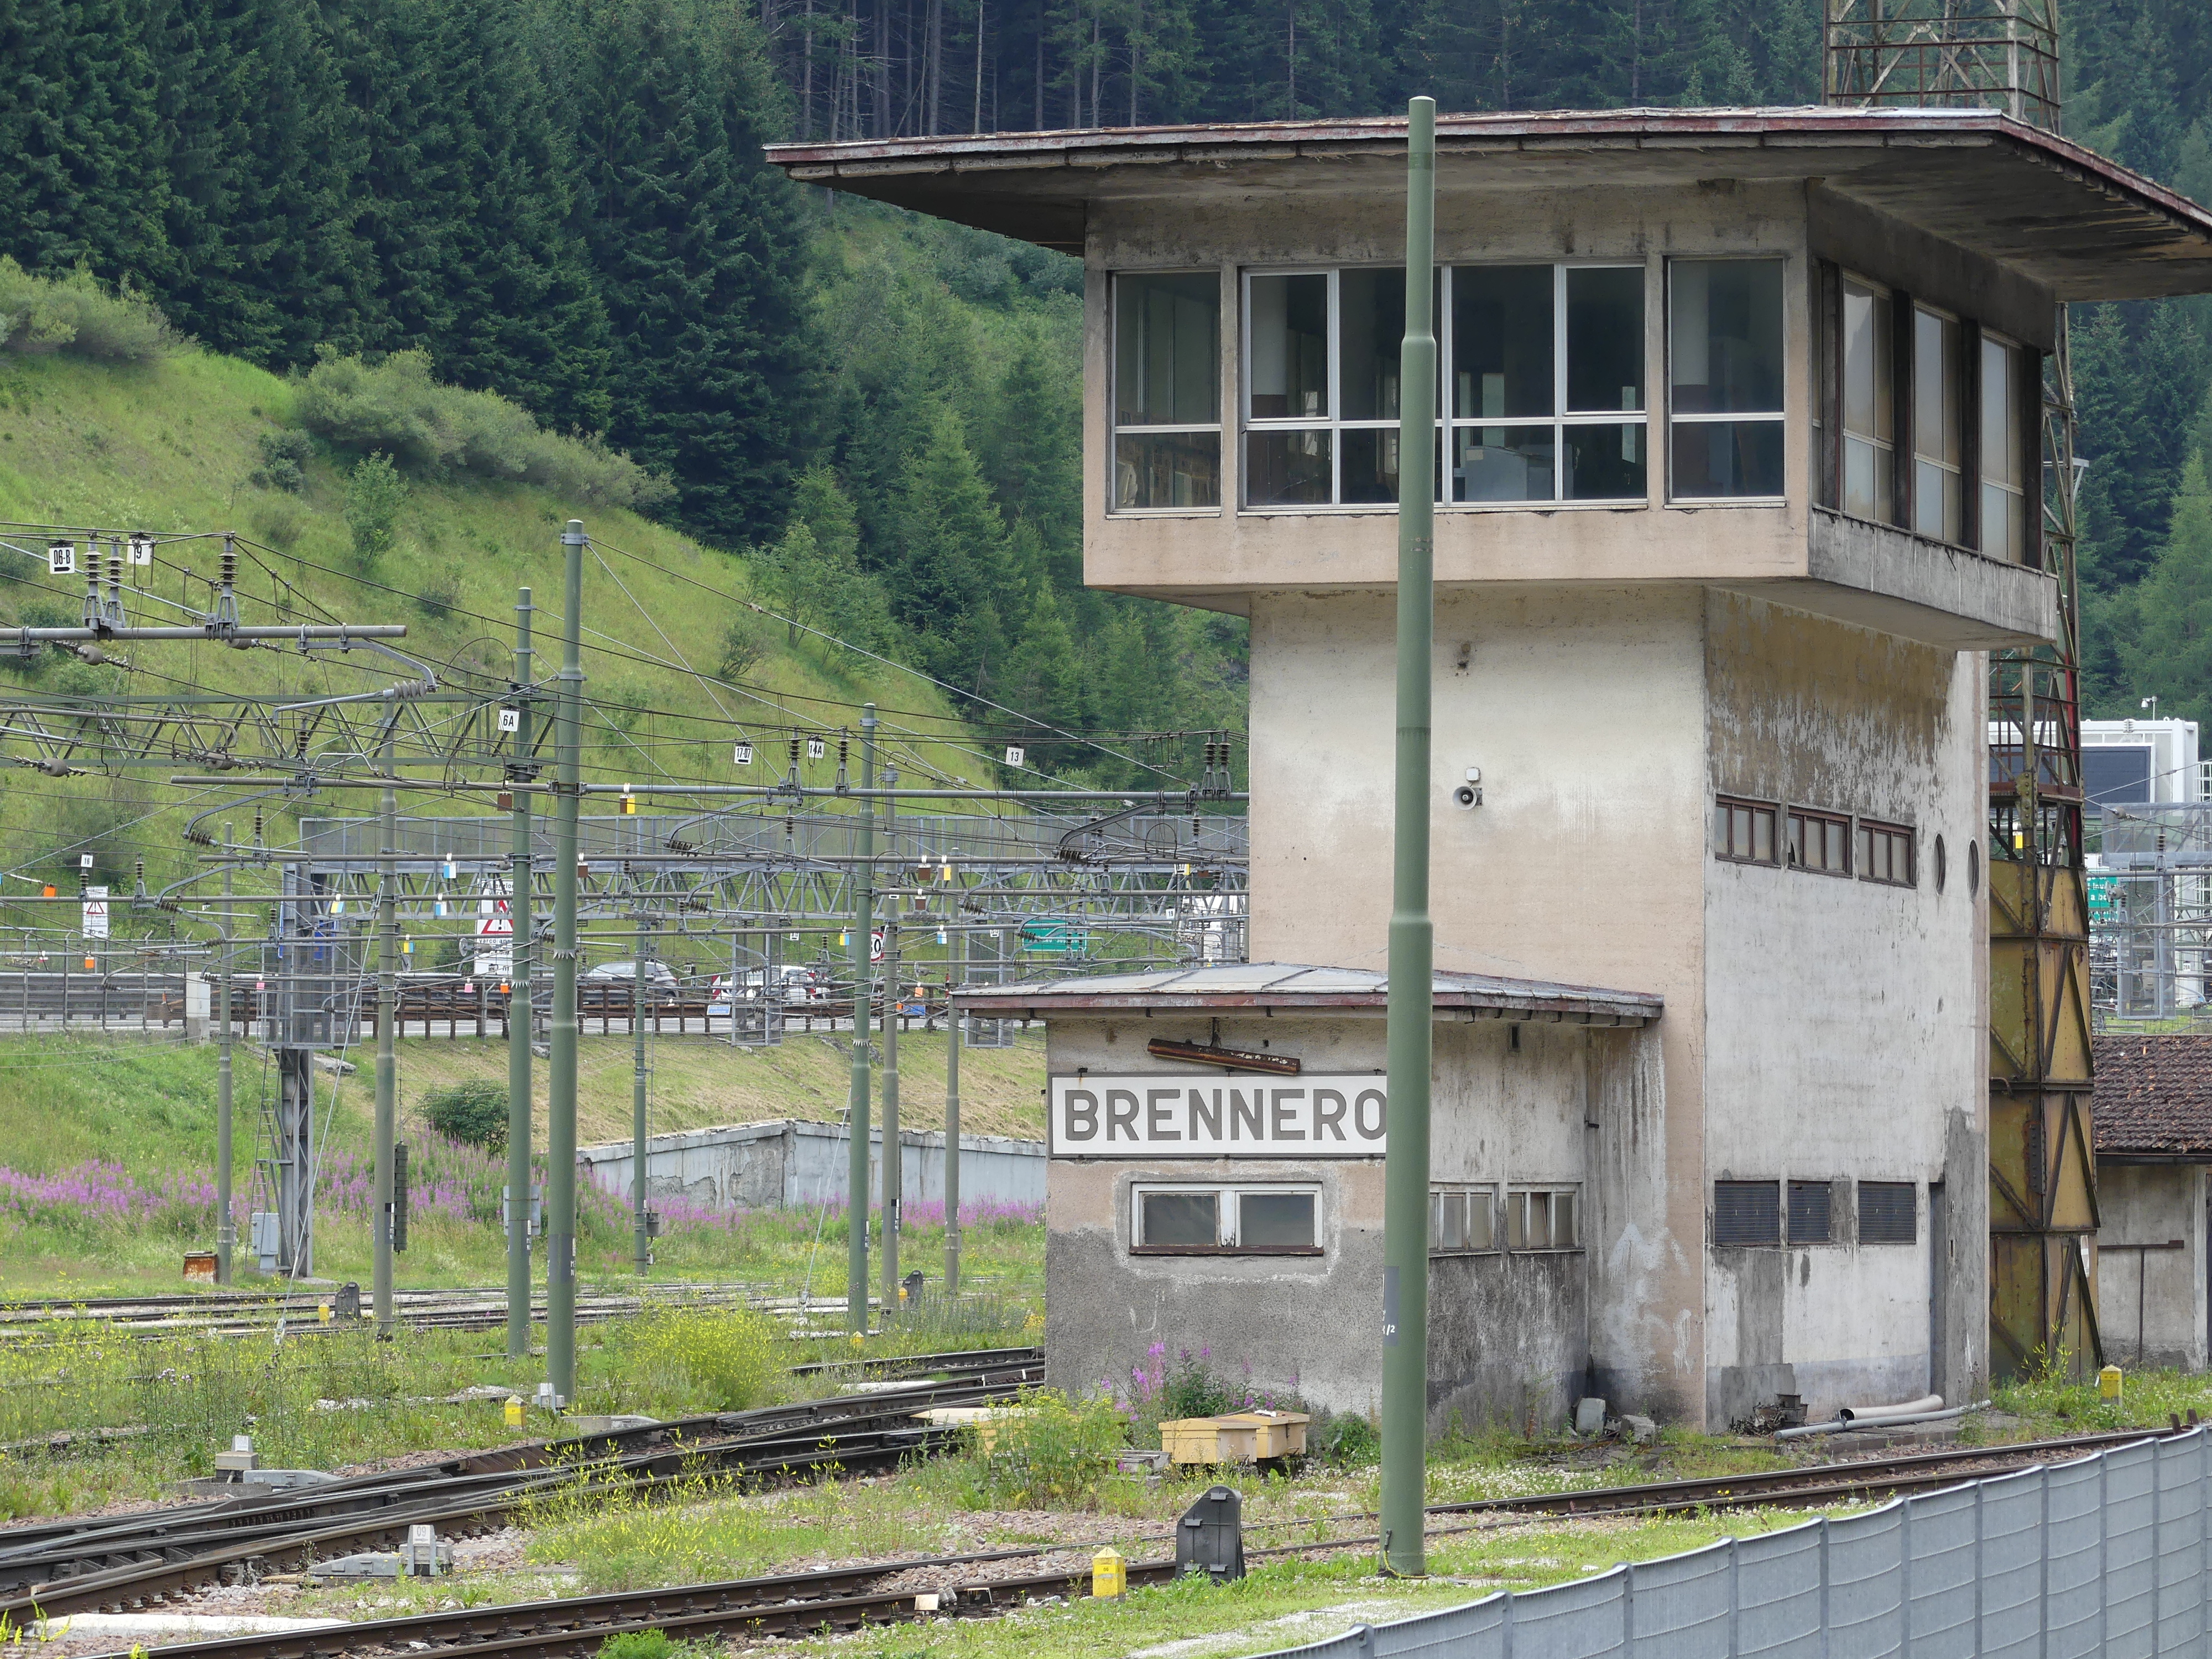 Alla stazione ferroviaria del Brennero (foto: Michele Luppi)